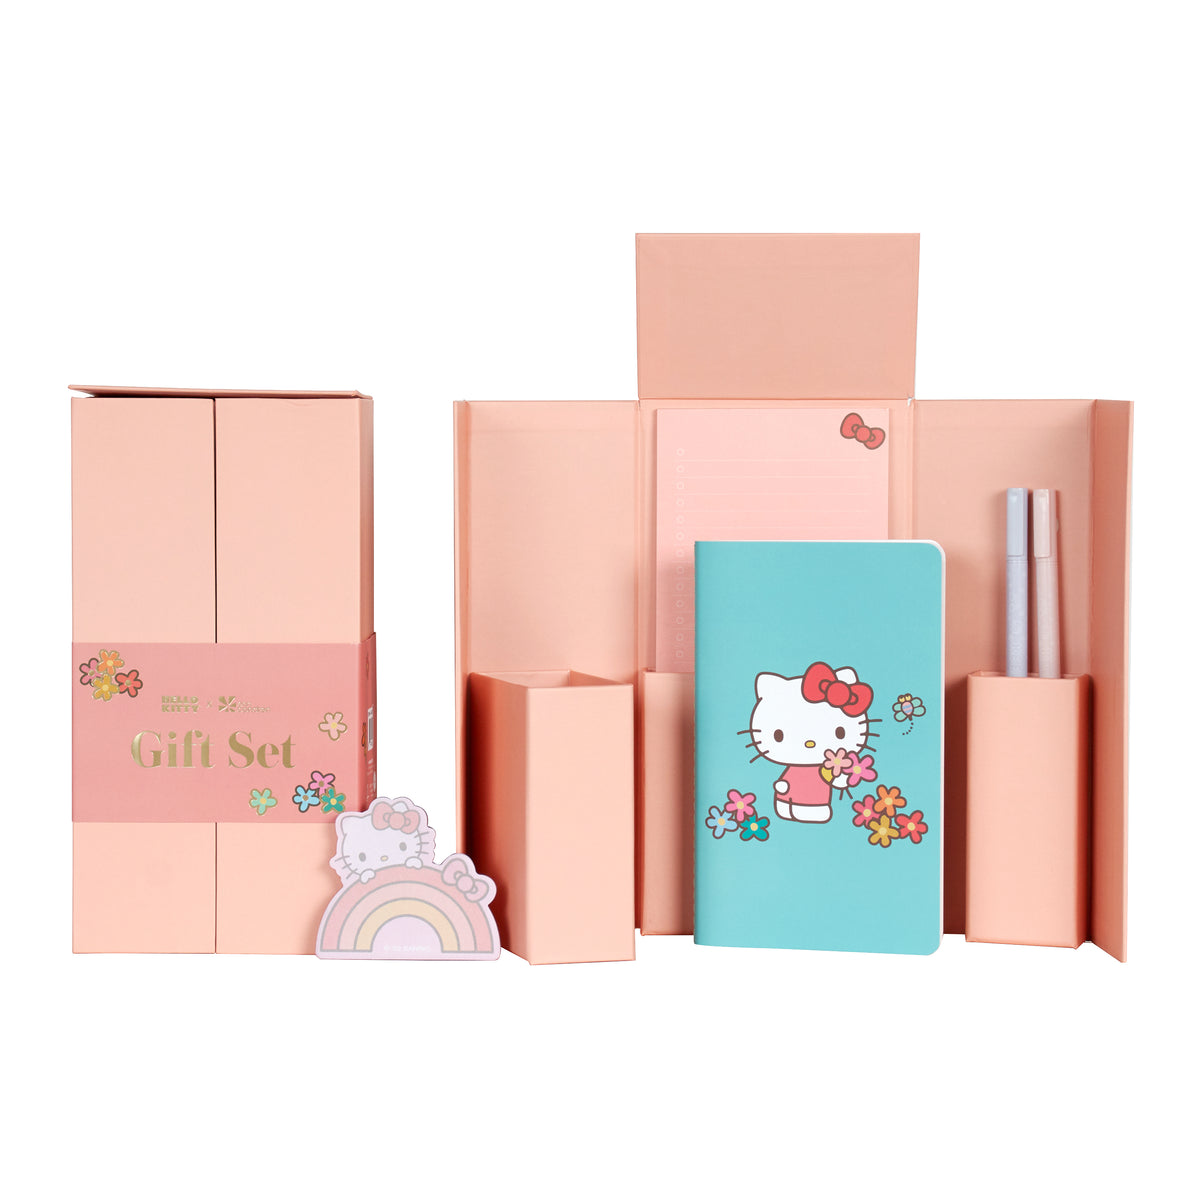 Hello Kitty x Erin Condren Gift Set